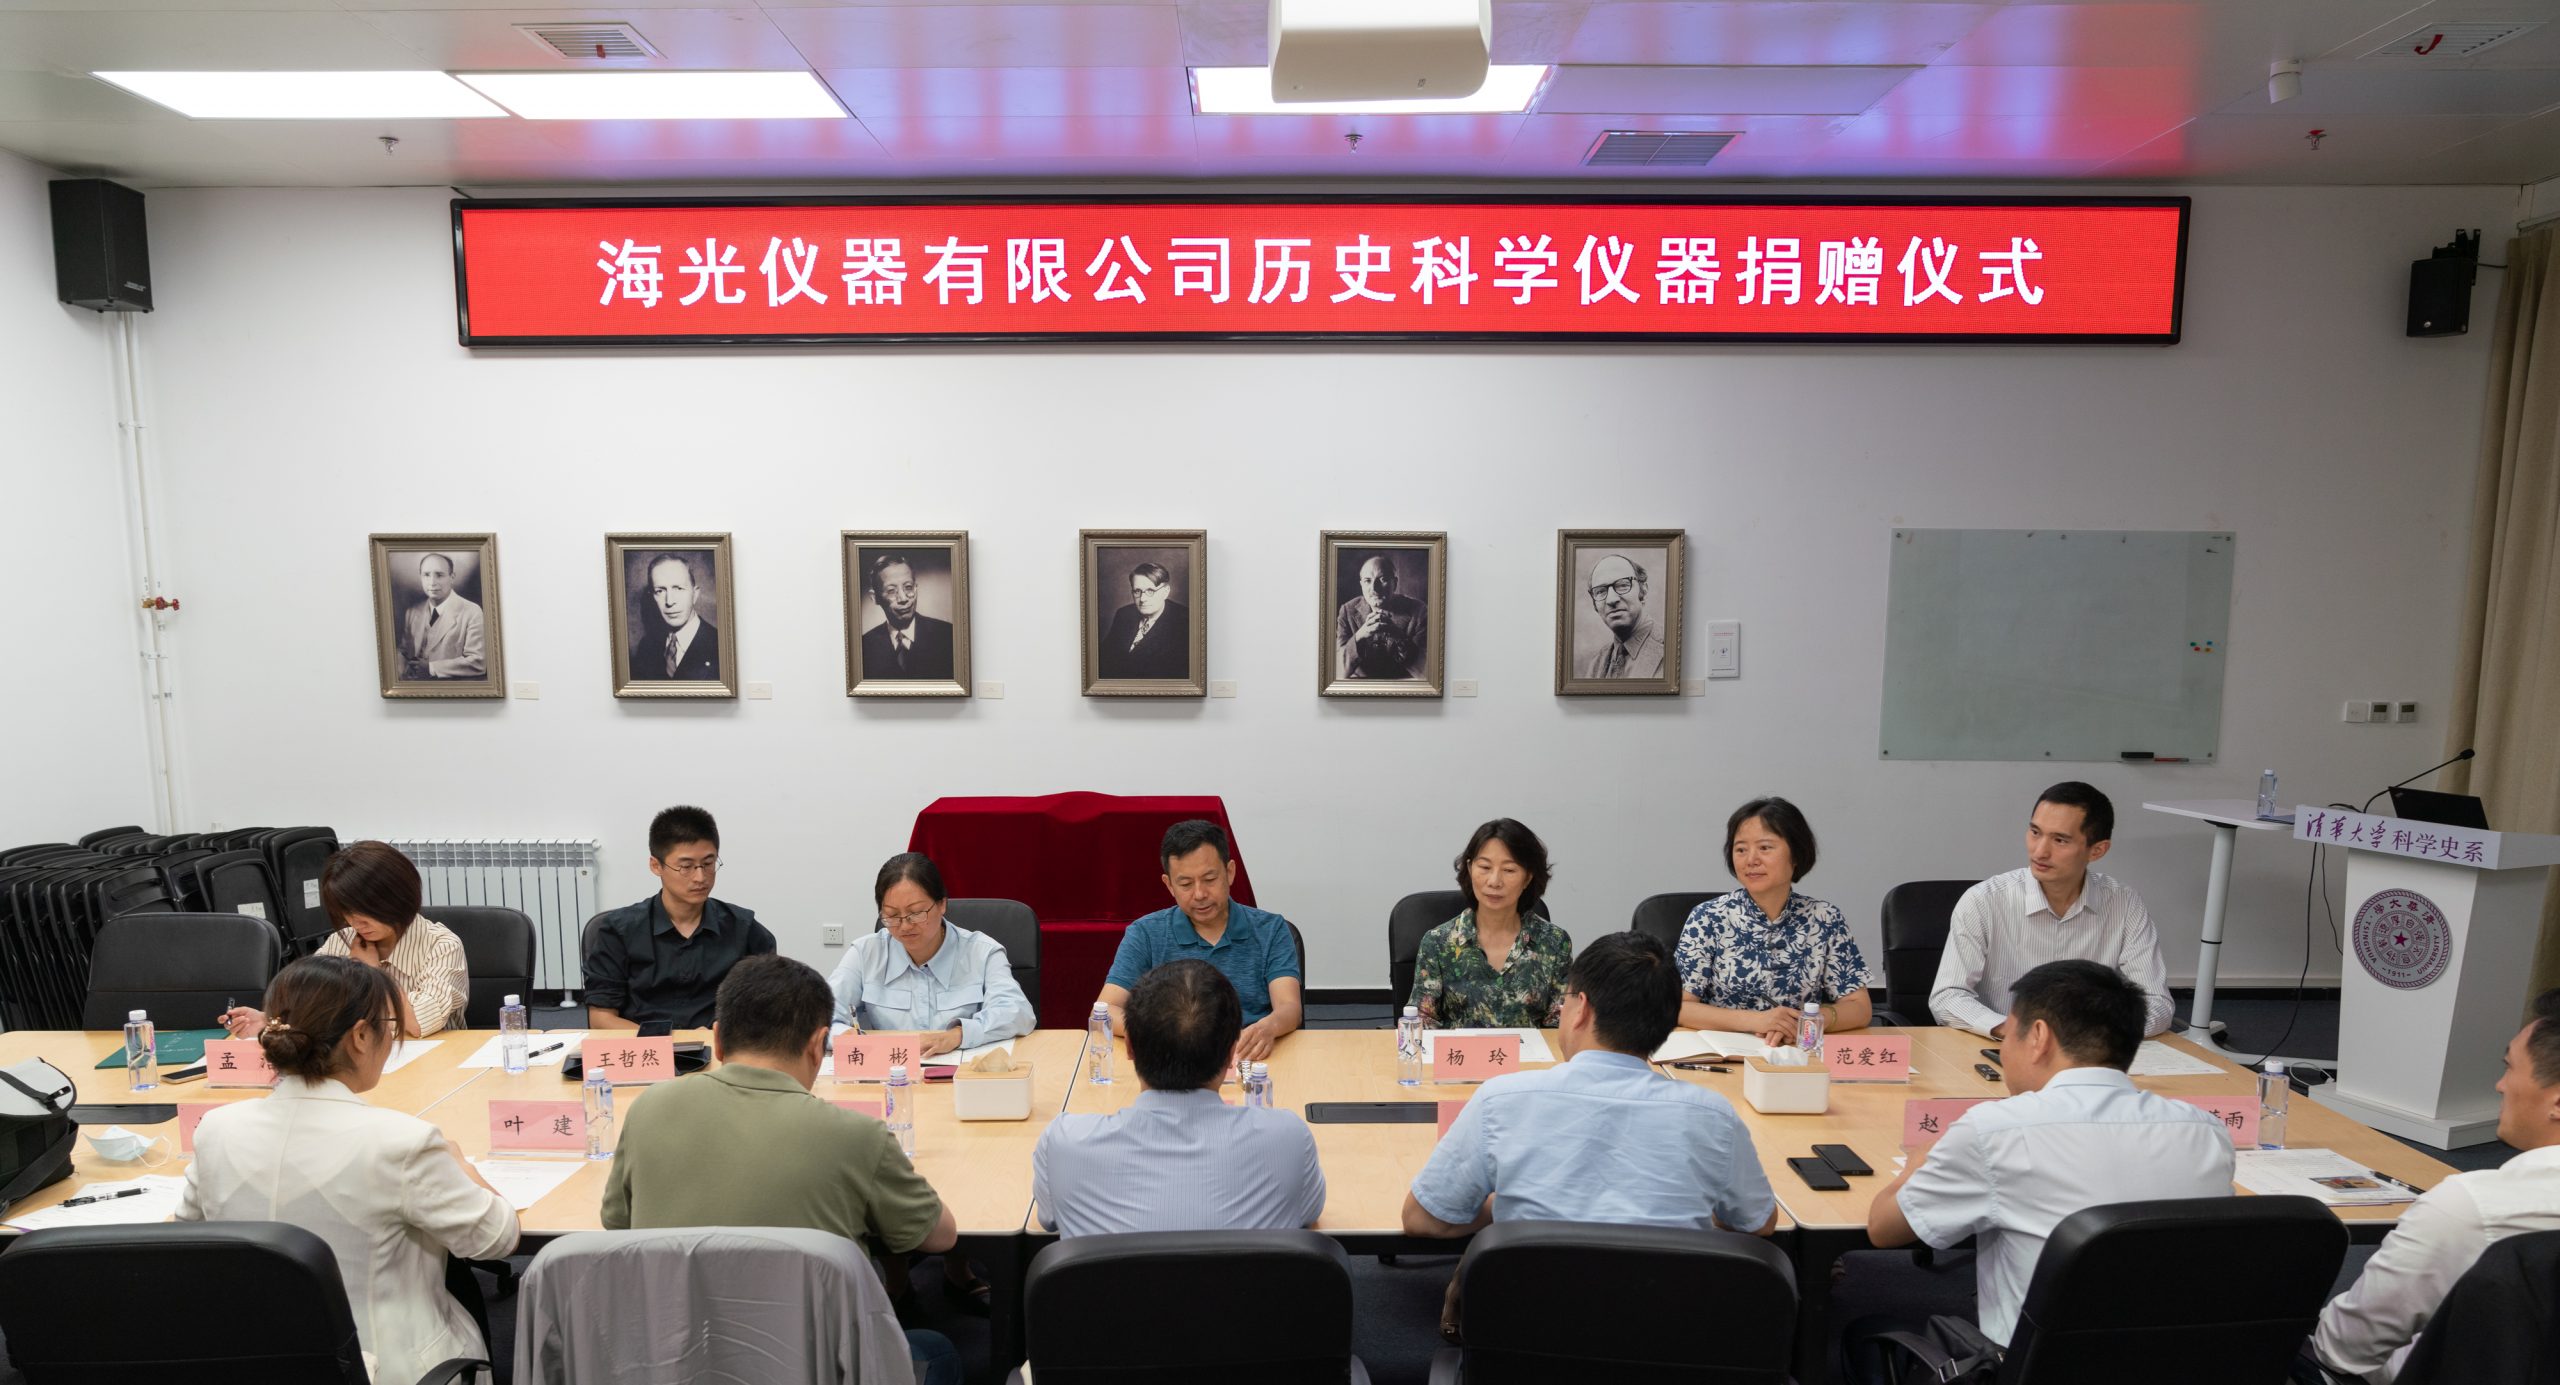 北京海光仪器公司向我馆捐赠XDY-1双道原子荧光光度计